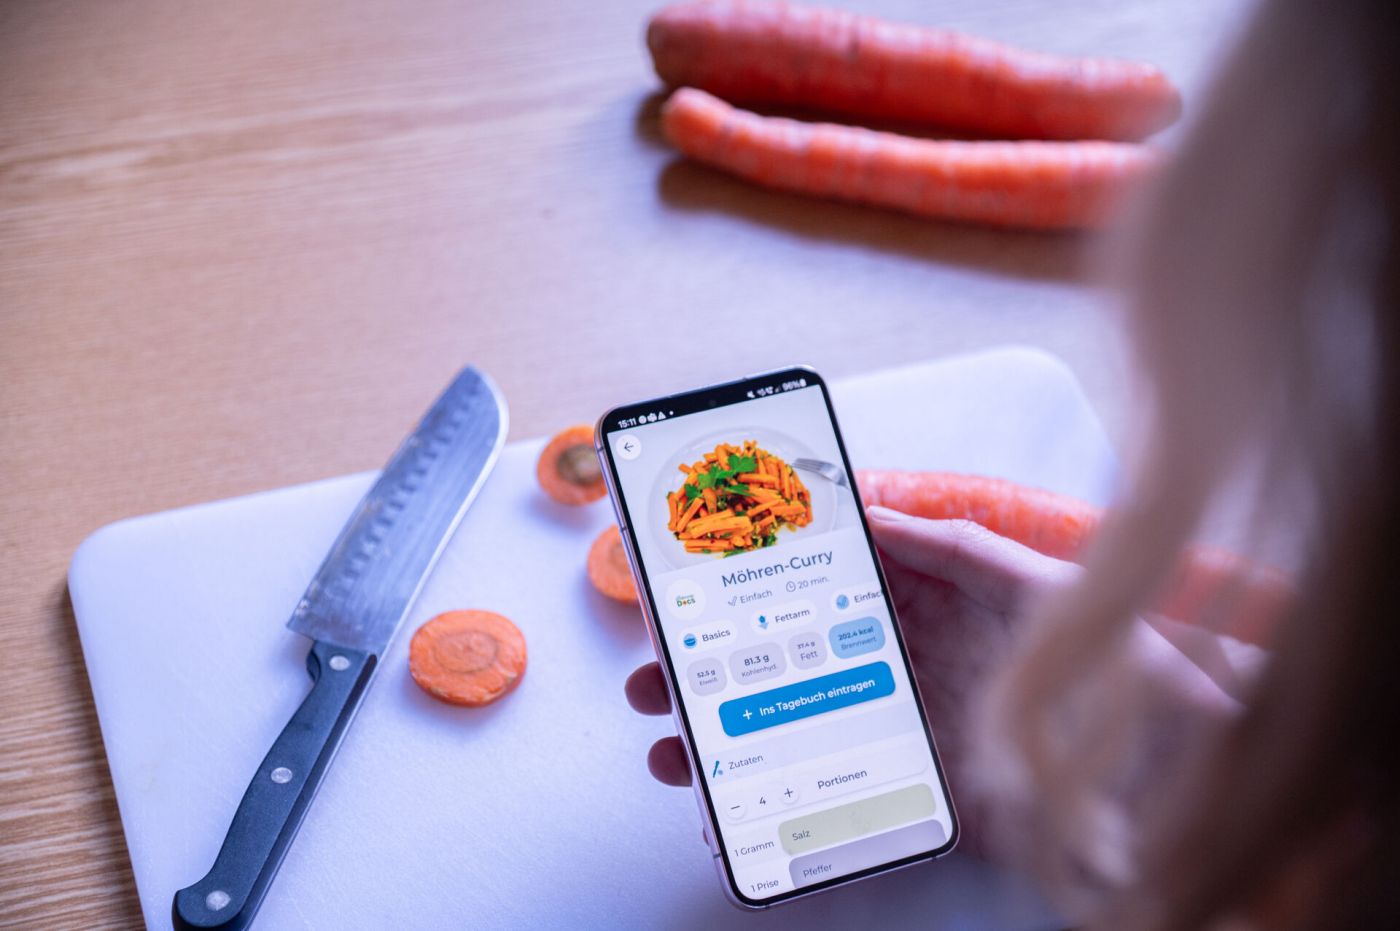 Eine Frau blickt auf ein Smartphone, auf dem die App meal&heal läuft. Im Hintergrund ist ein Schneidebrett samt Messer zu sehen, auf dem eine Möhre geschnitten wurde. (Foto: FH Münster/Frederik Tebbe)